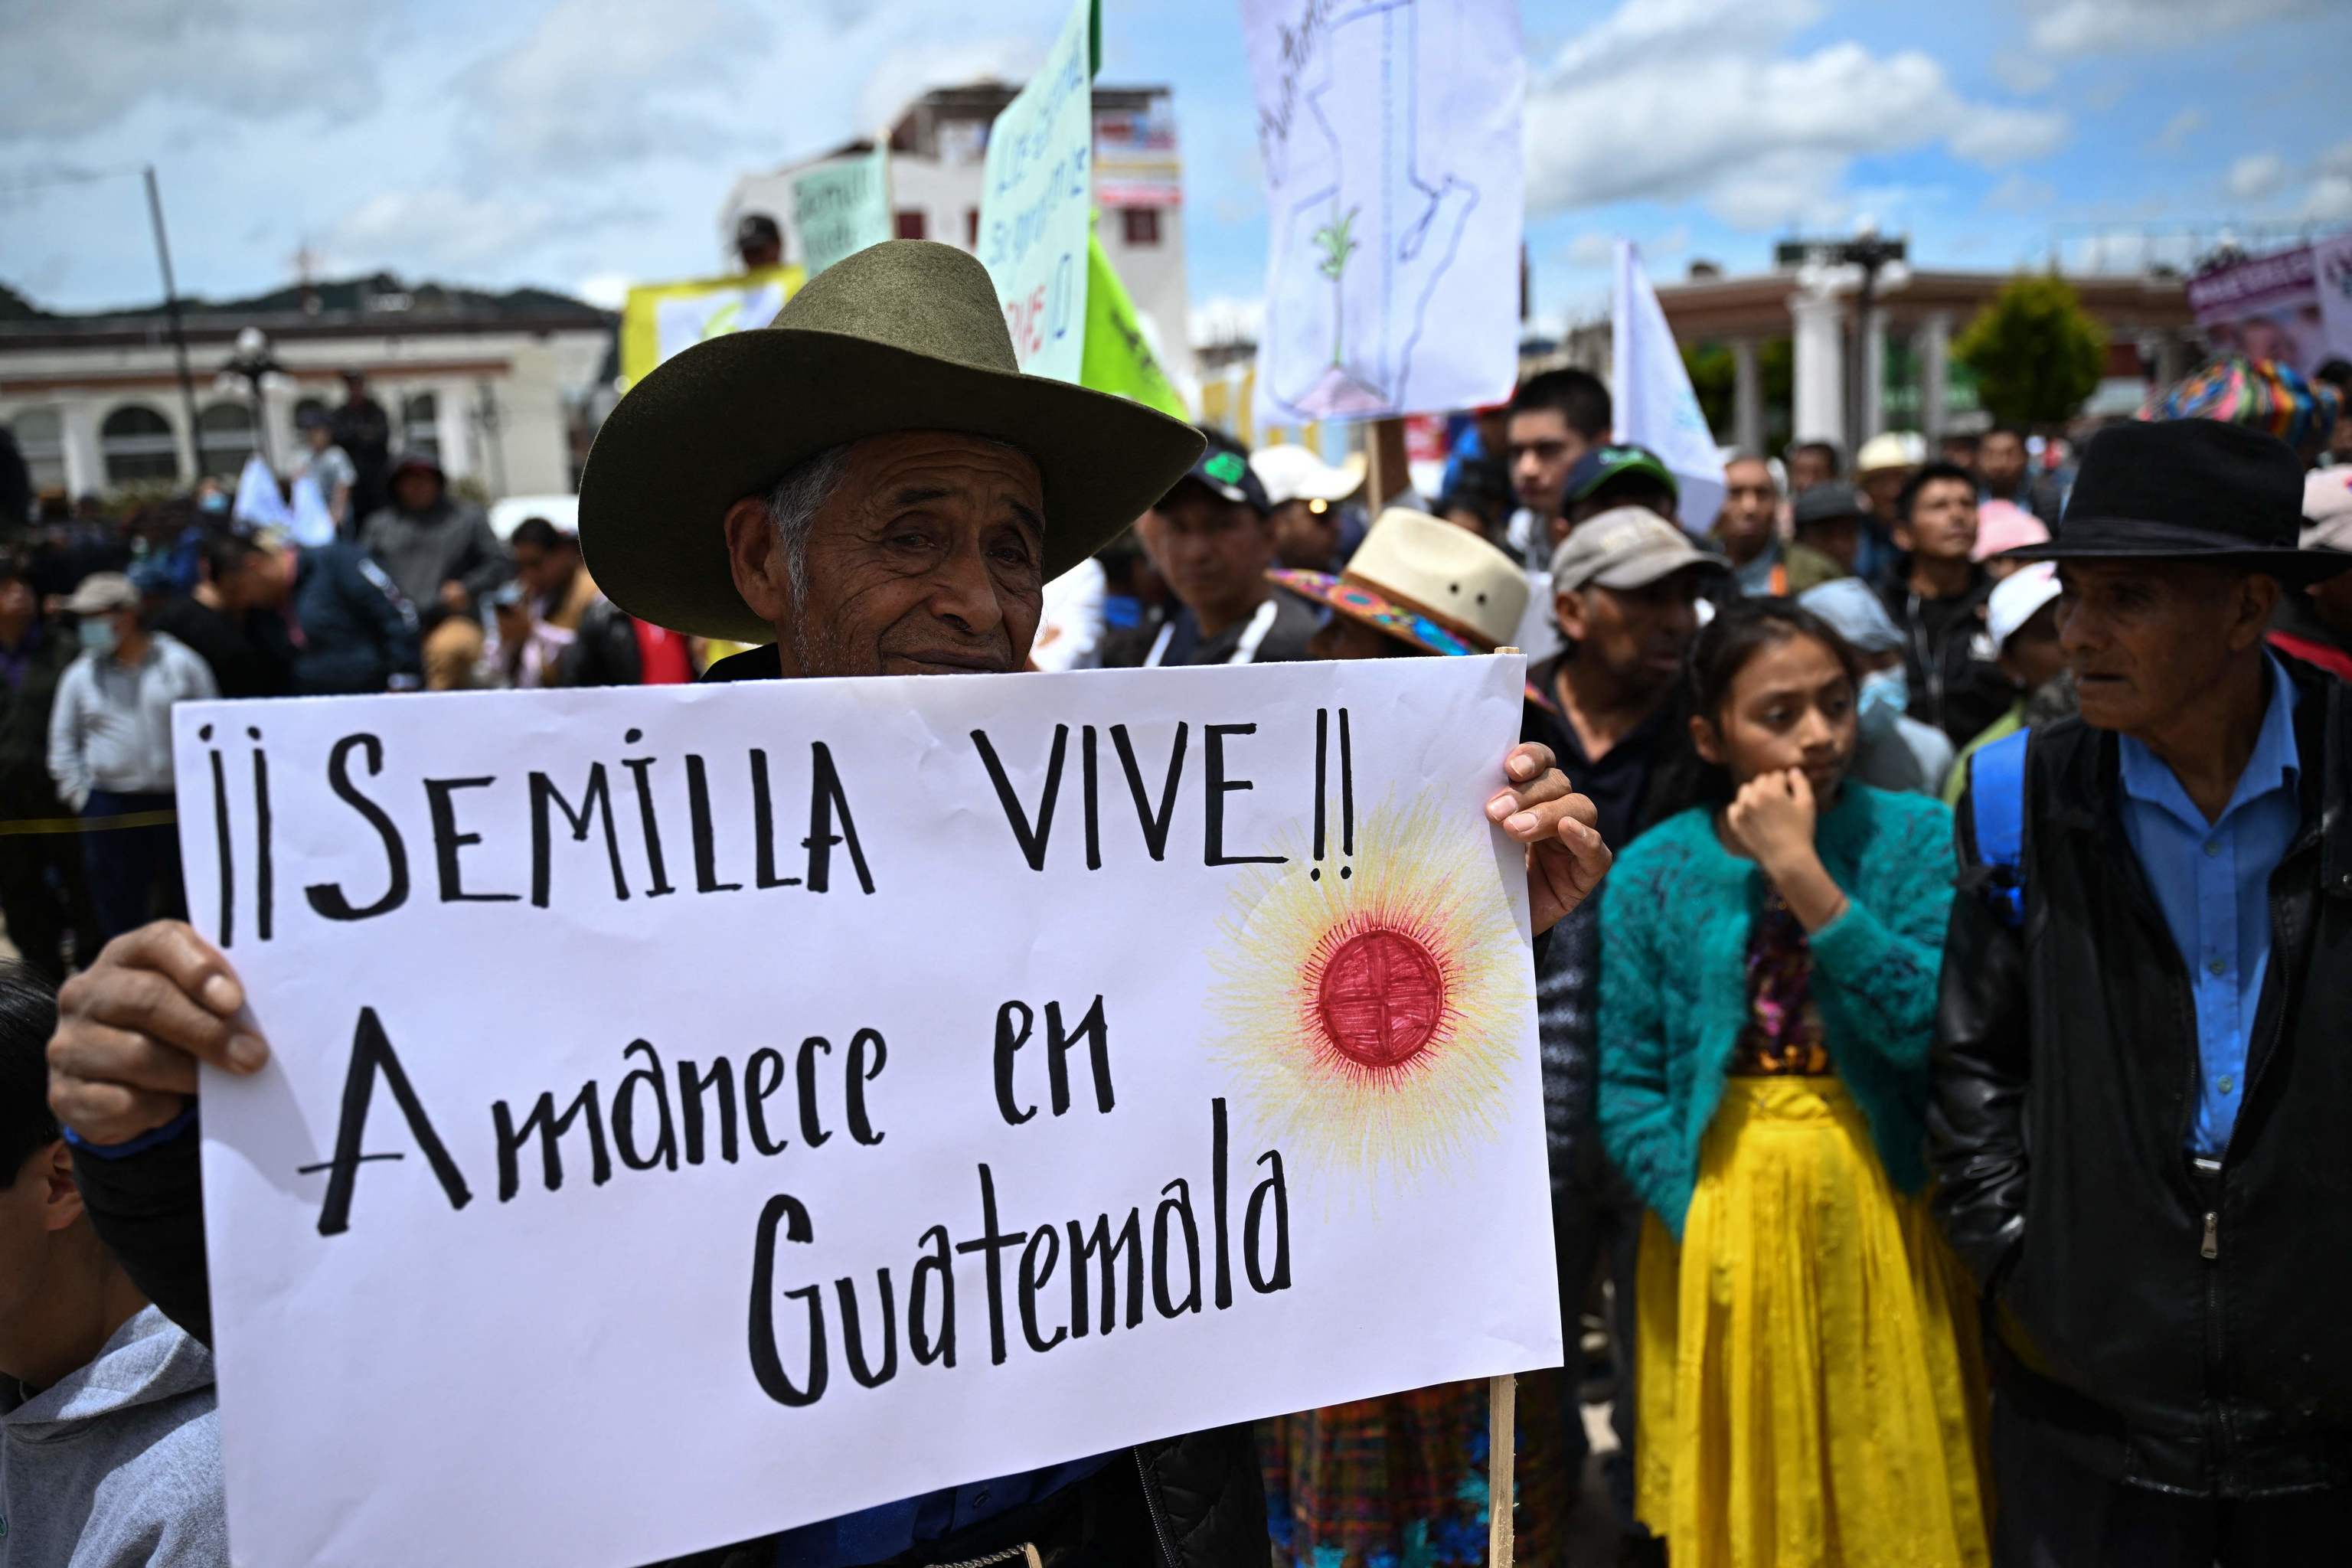 Miles de personas se manifiestan en Guatemala tras el intento fallido de ilegalizar el partido Semilla: "Estamos al borde de perder la democracia" | Internacional